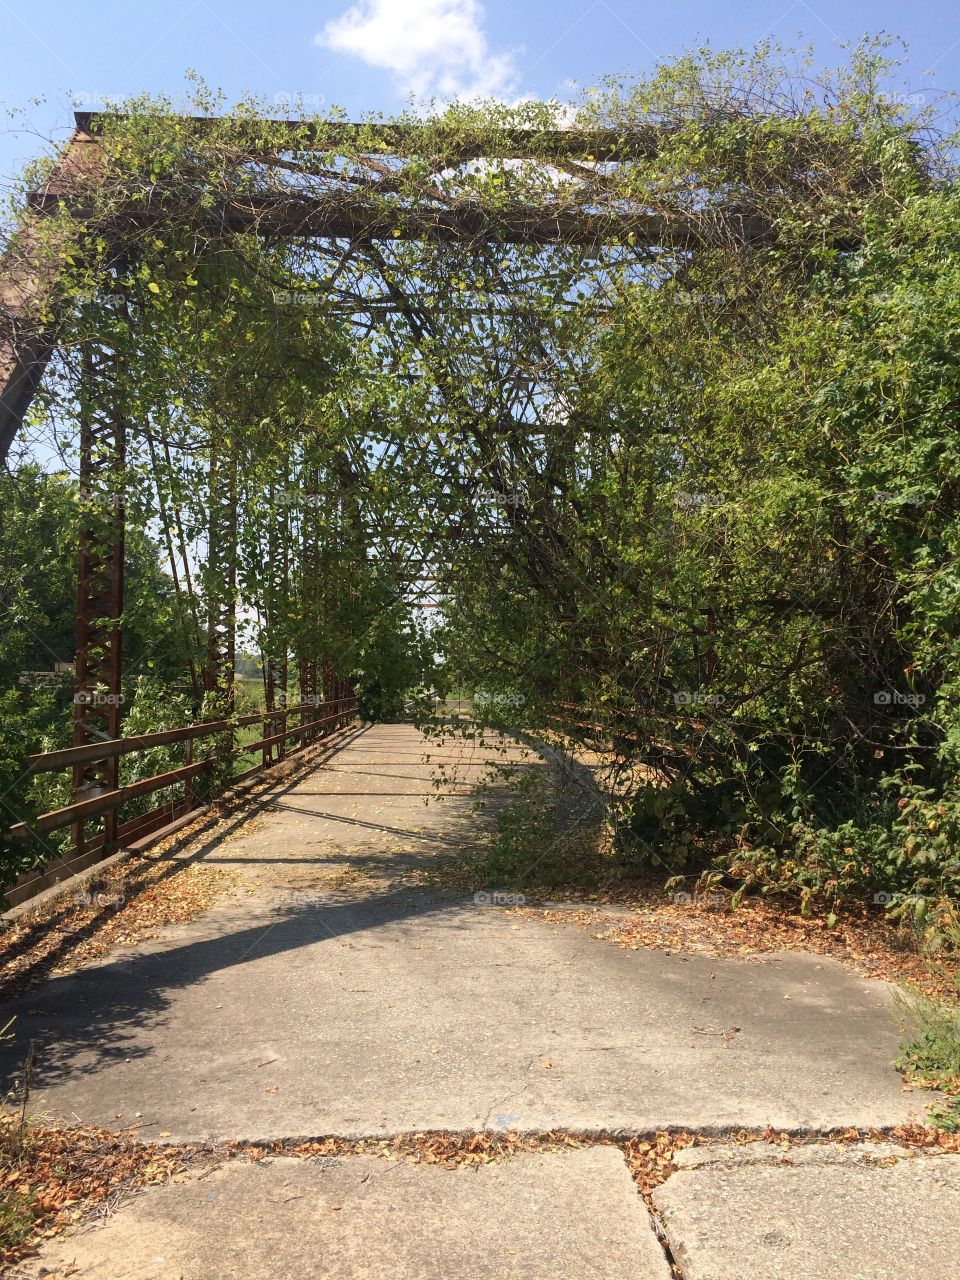 Abandoned highway bridge